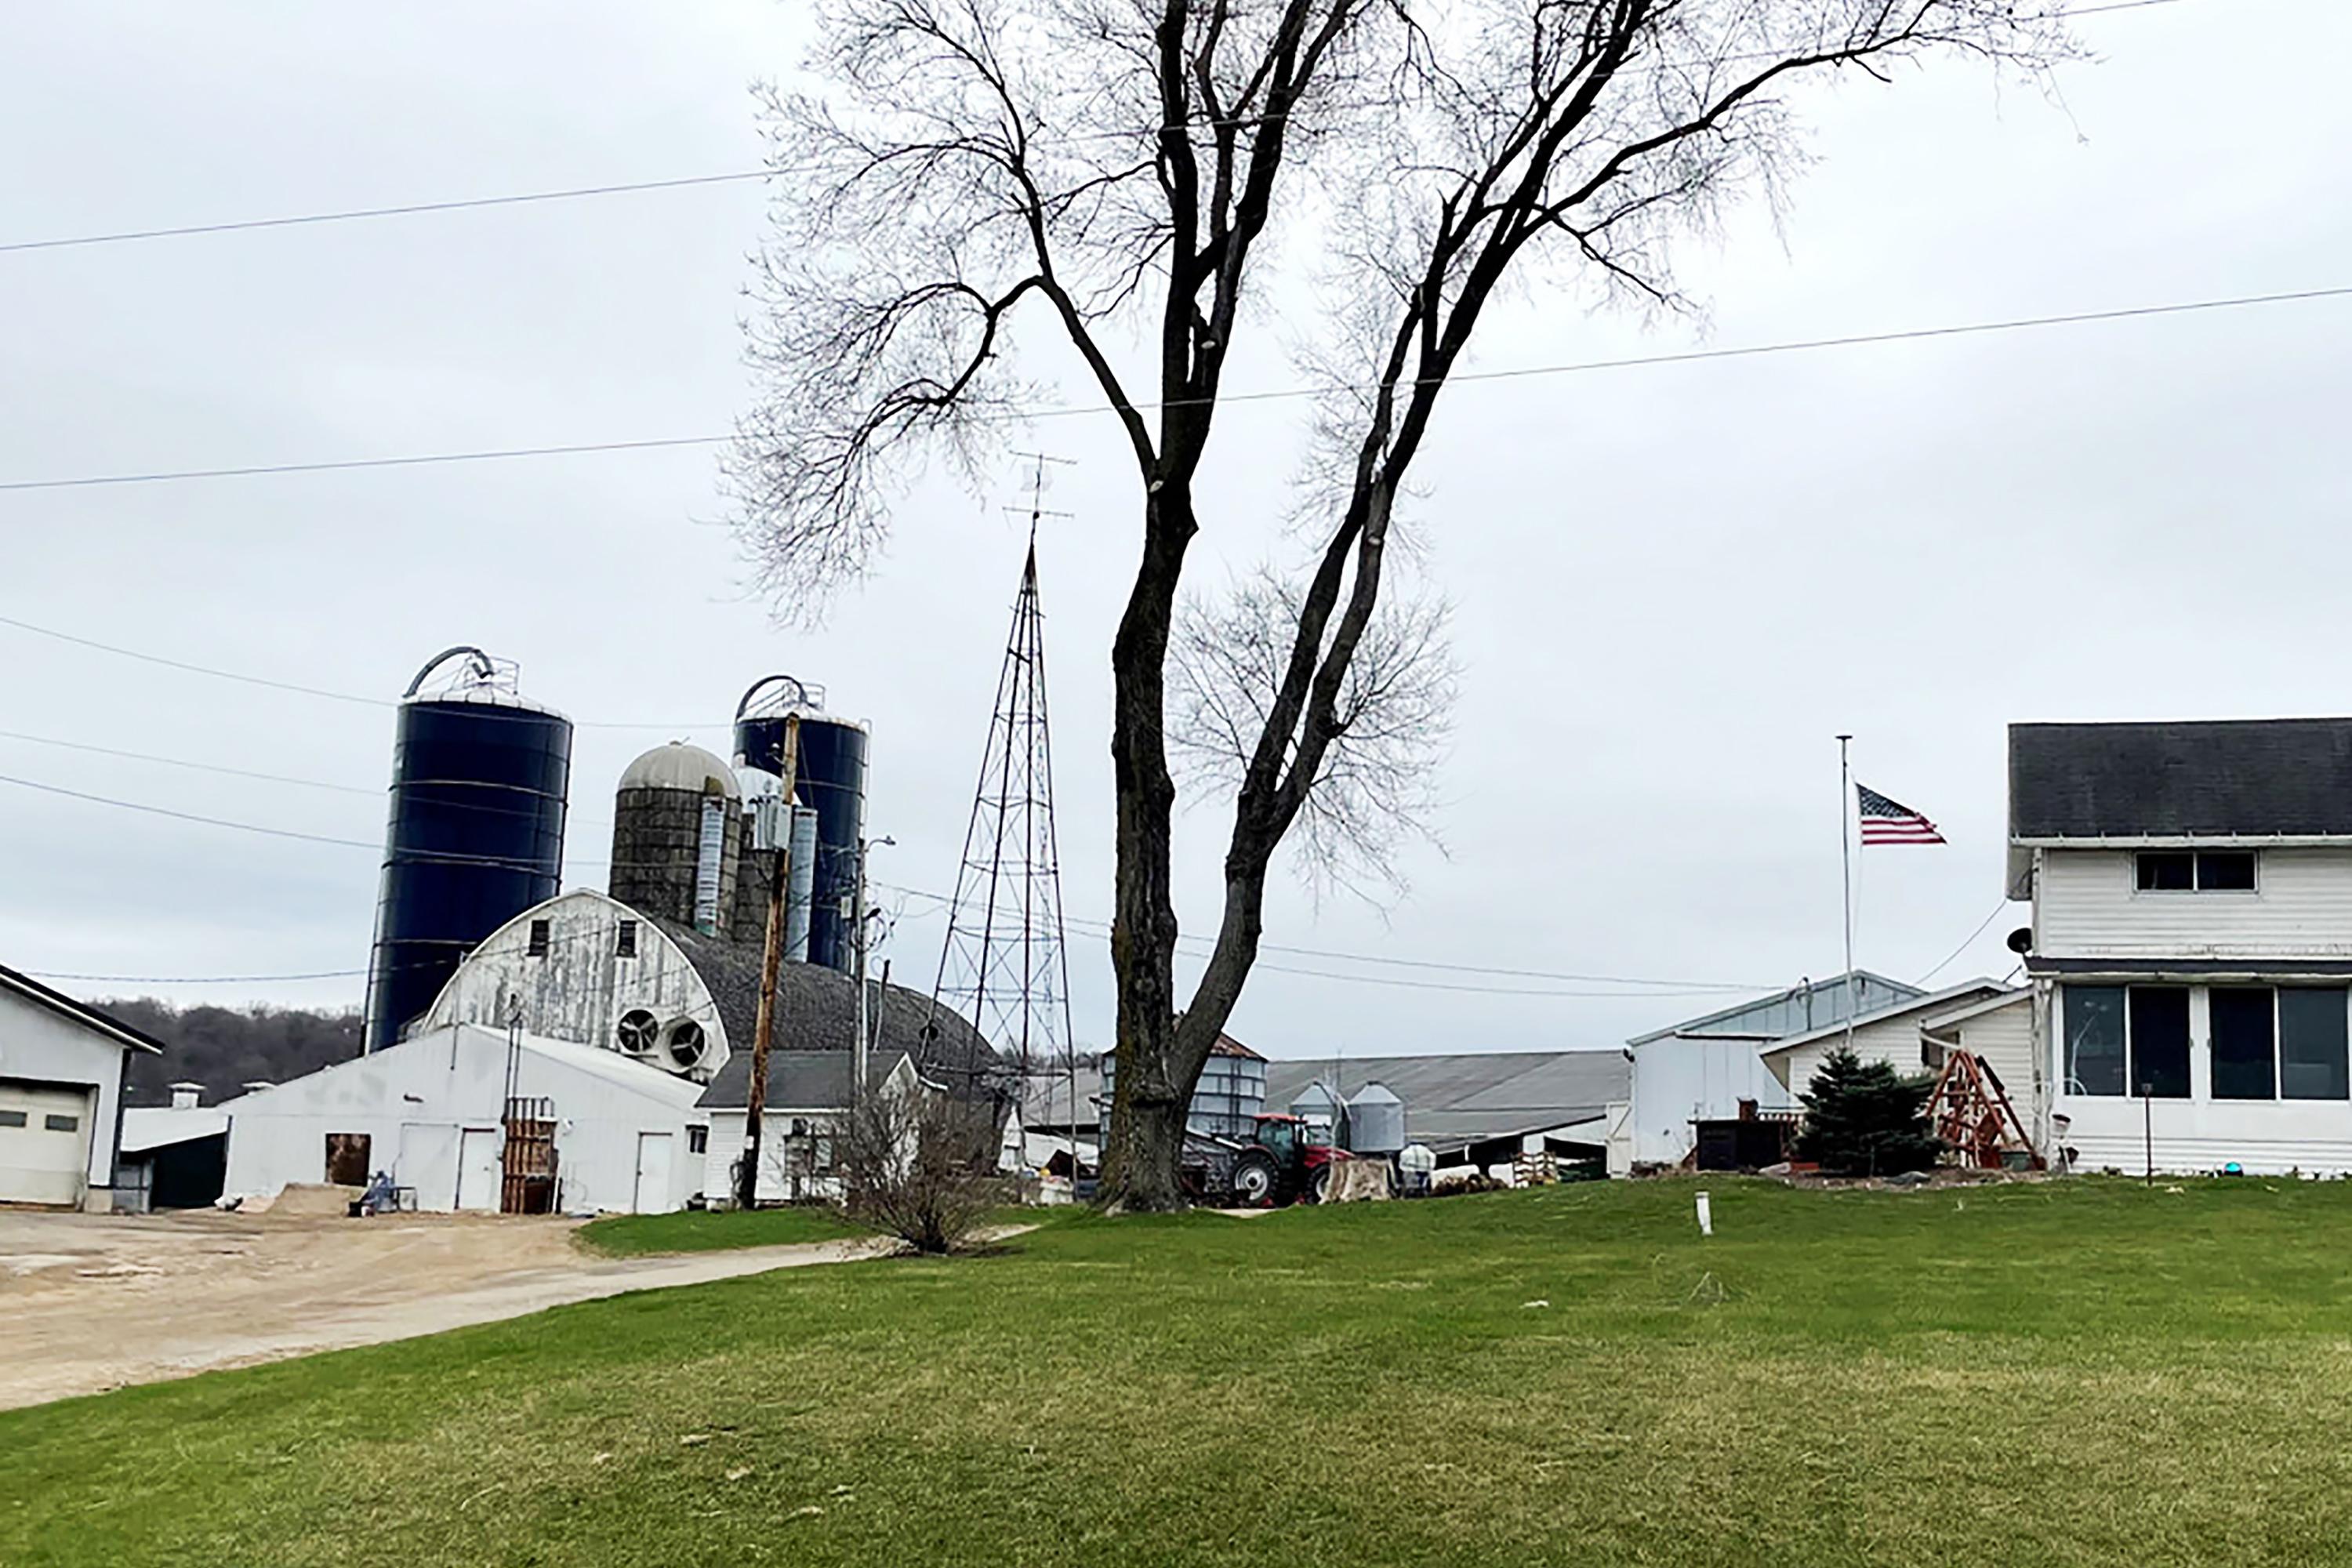 D&K Dairy farm facilities in Dane County, Wisconsin. Photo by El Faro: Melissa Sanchez/ ProPublica.